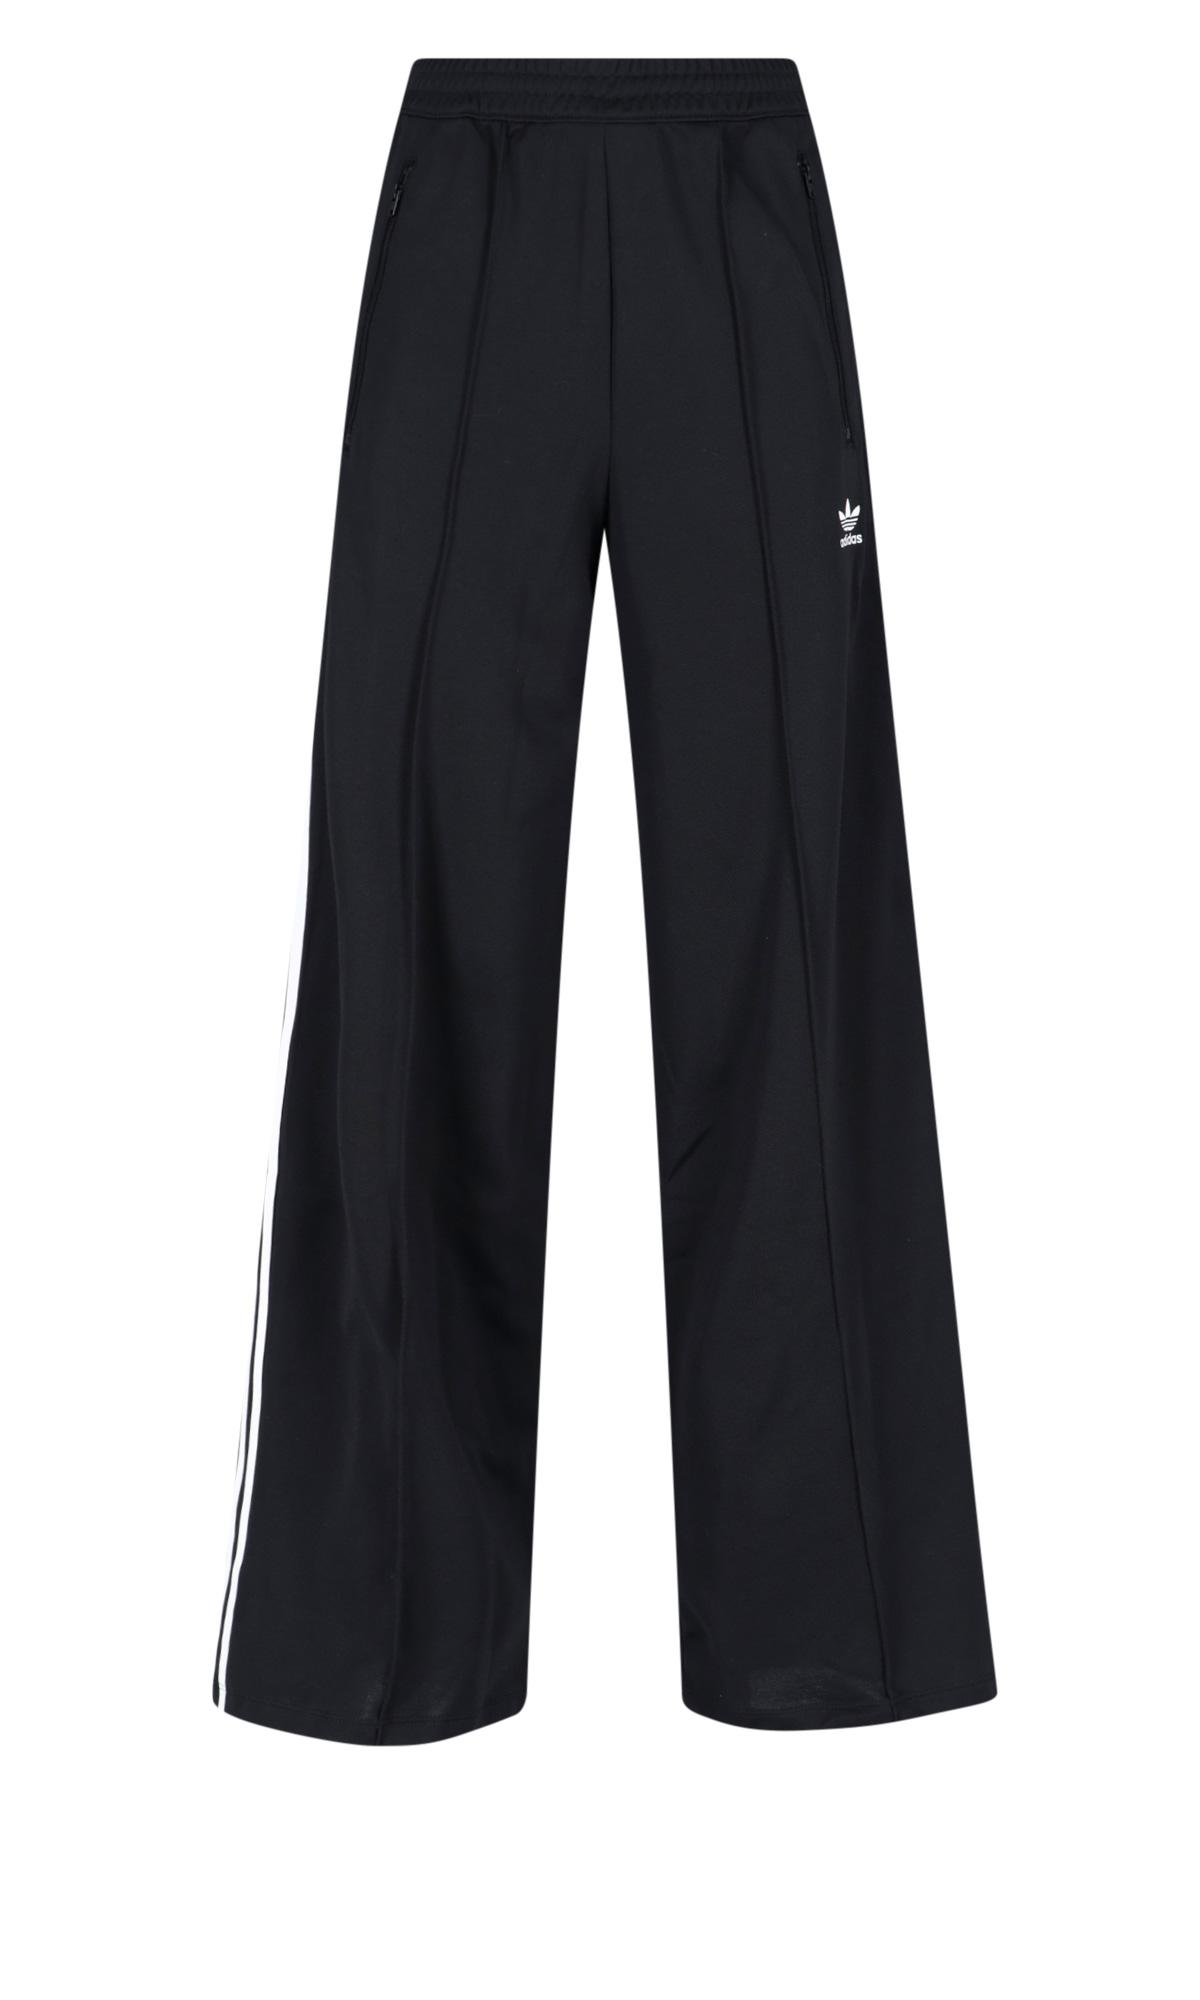 adidas Women's Superstar Full Length Track Pants PrimeBlue - Black